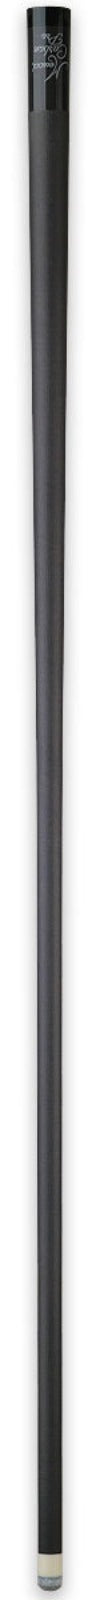 Meucci Carbon Fiber Pro Shaft - 12.5mm -Meucci